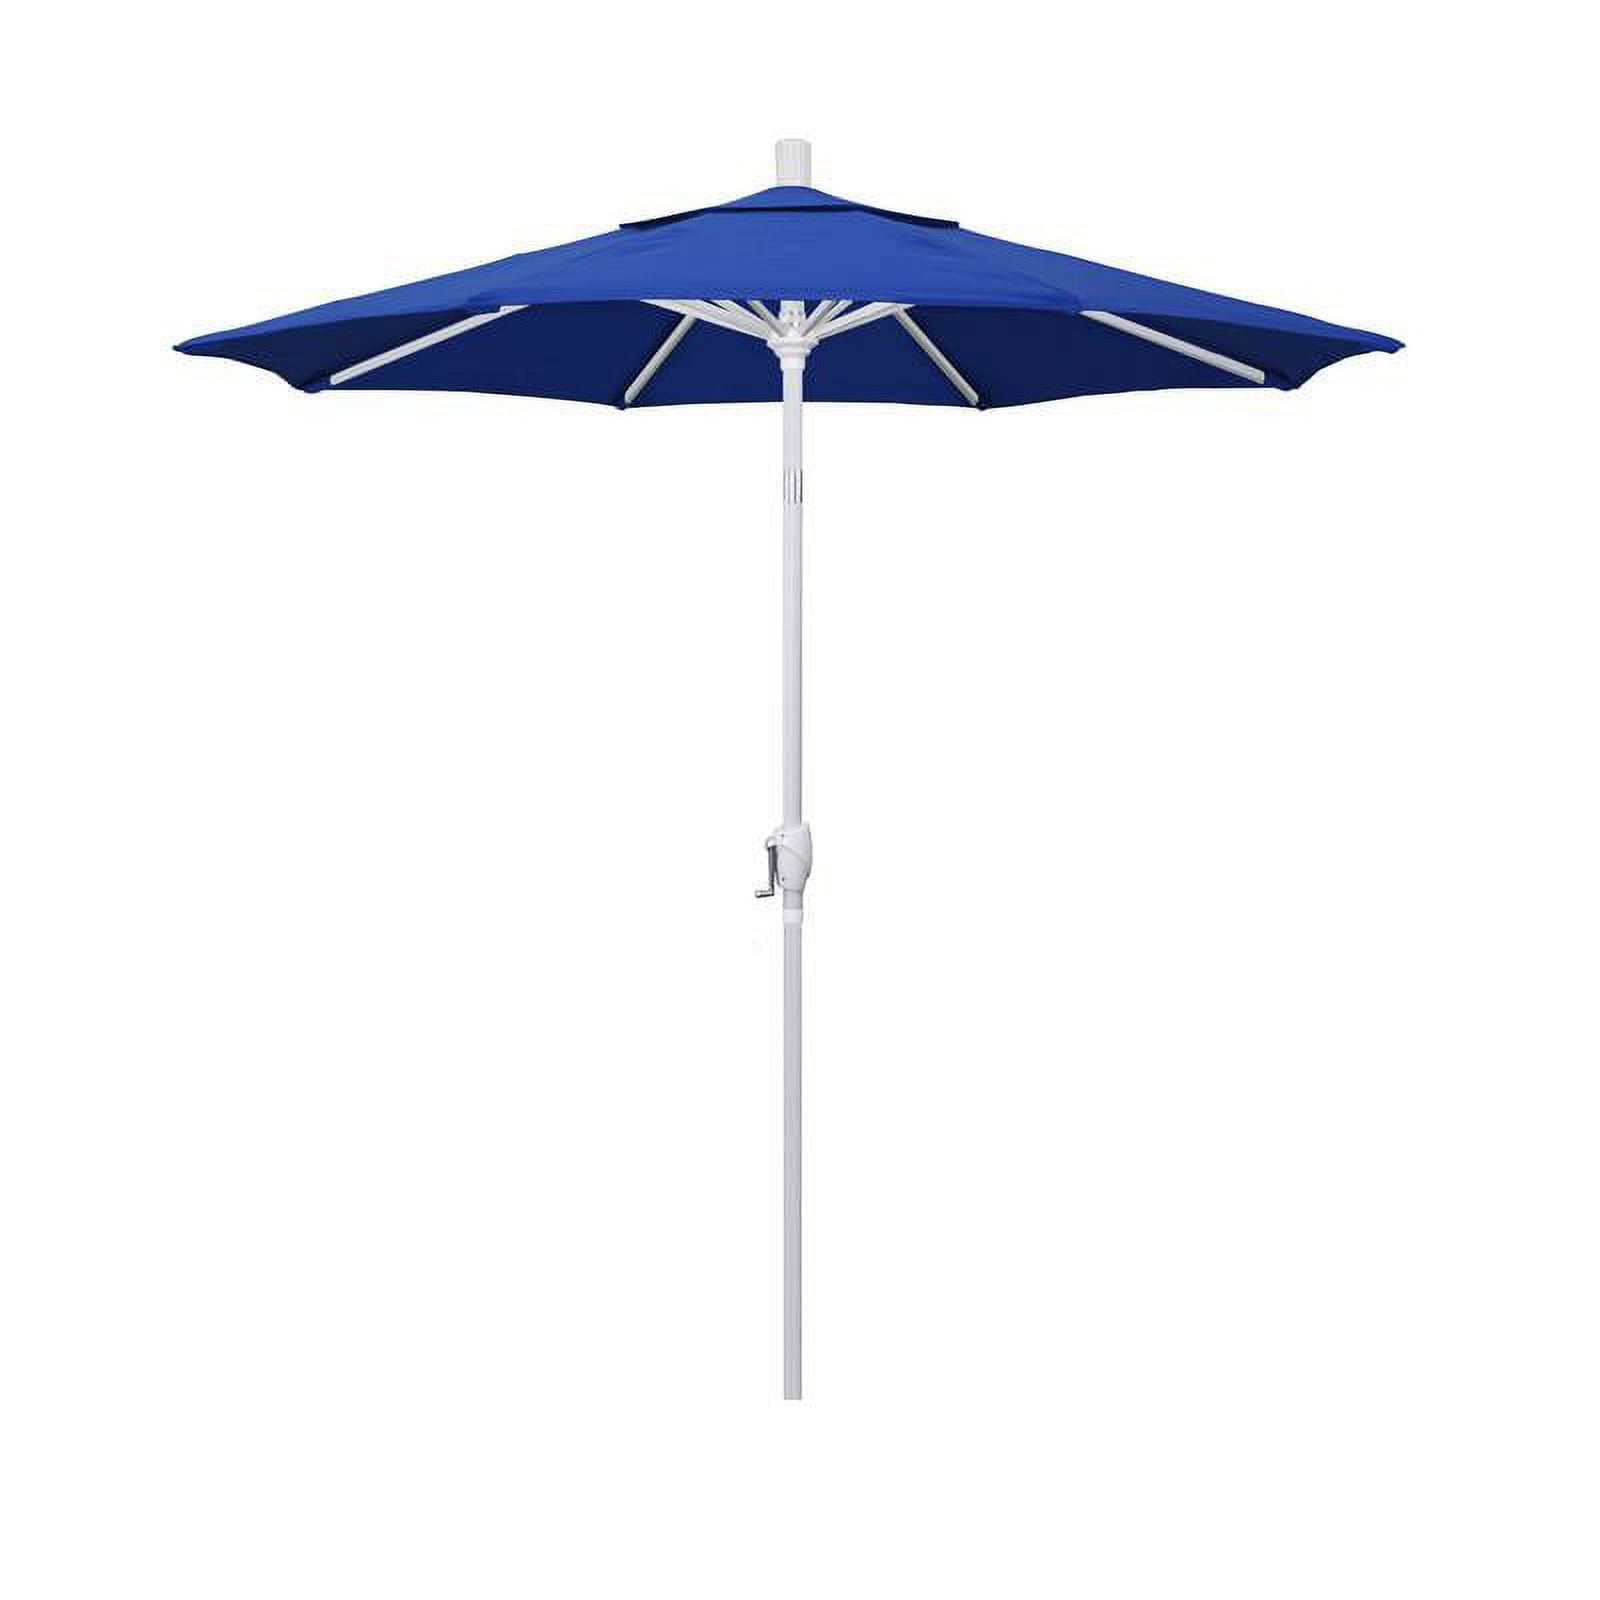 California Umbrella 7.5' Patio Umbrella in Pacifica Pacific Blue/Matted White - image 1 of 3